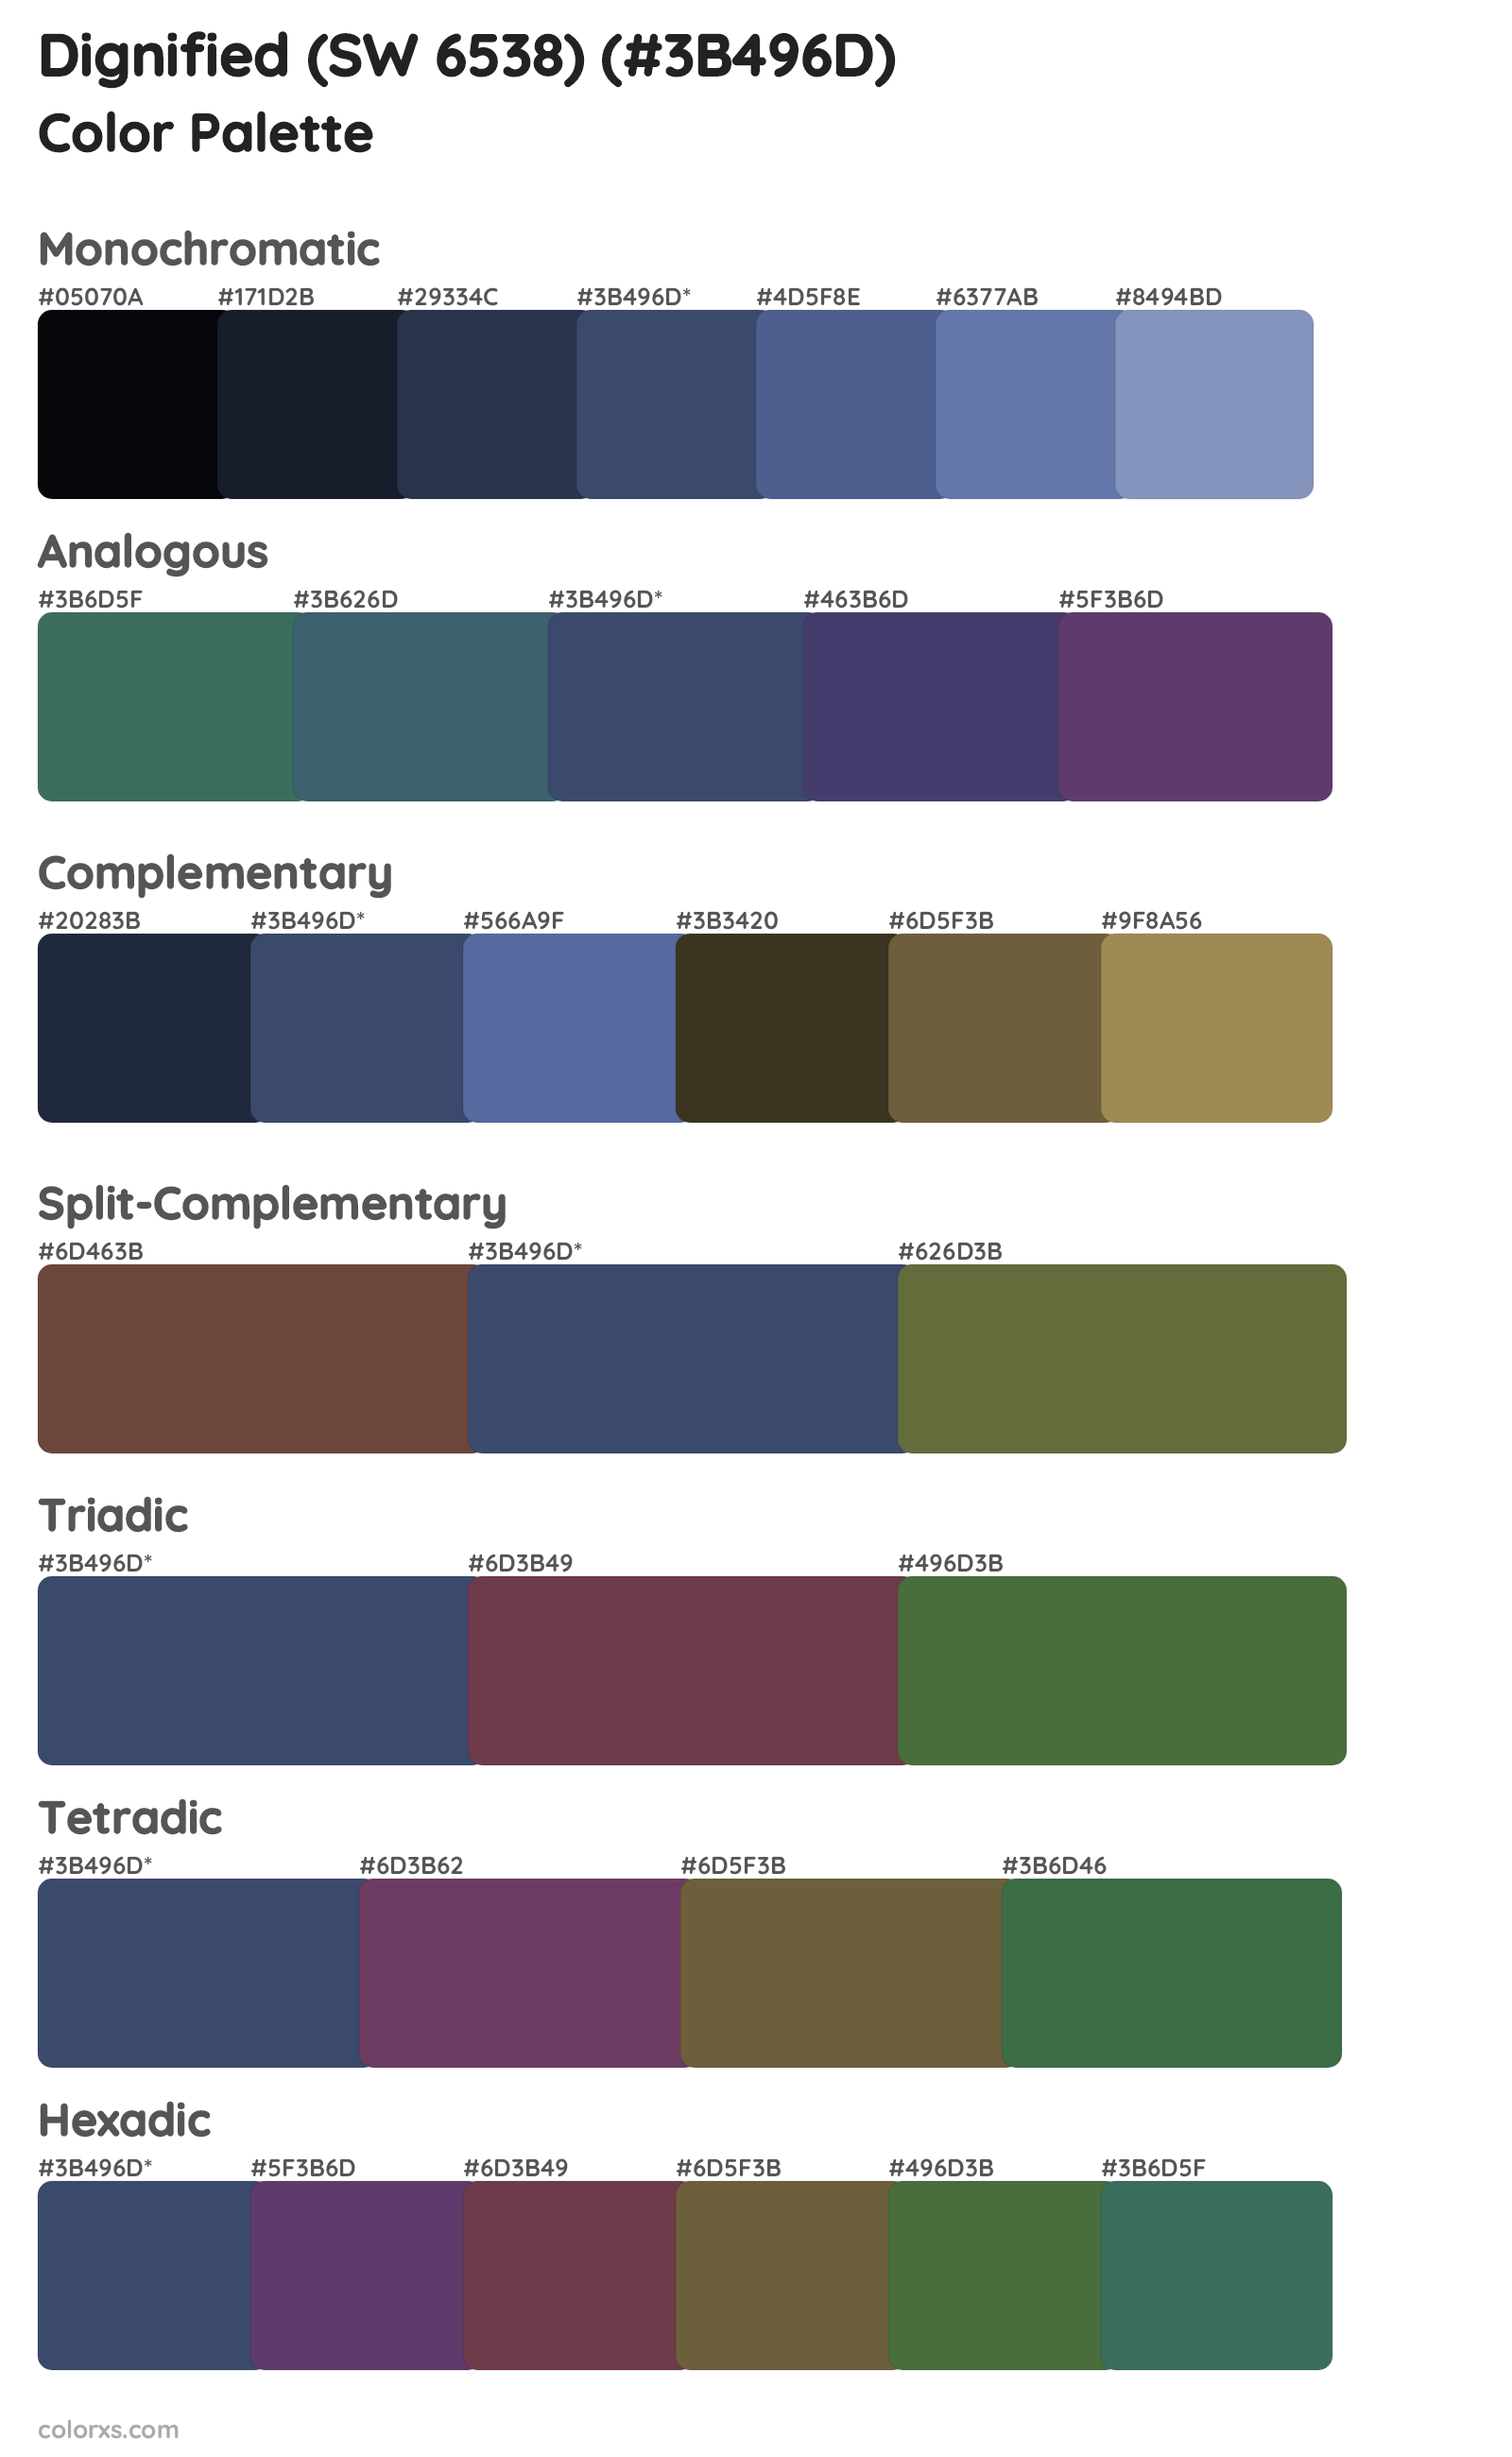 Dignified (SW 6538) Color Scheme Palettes